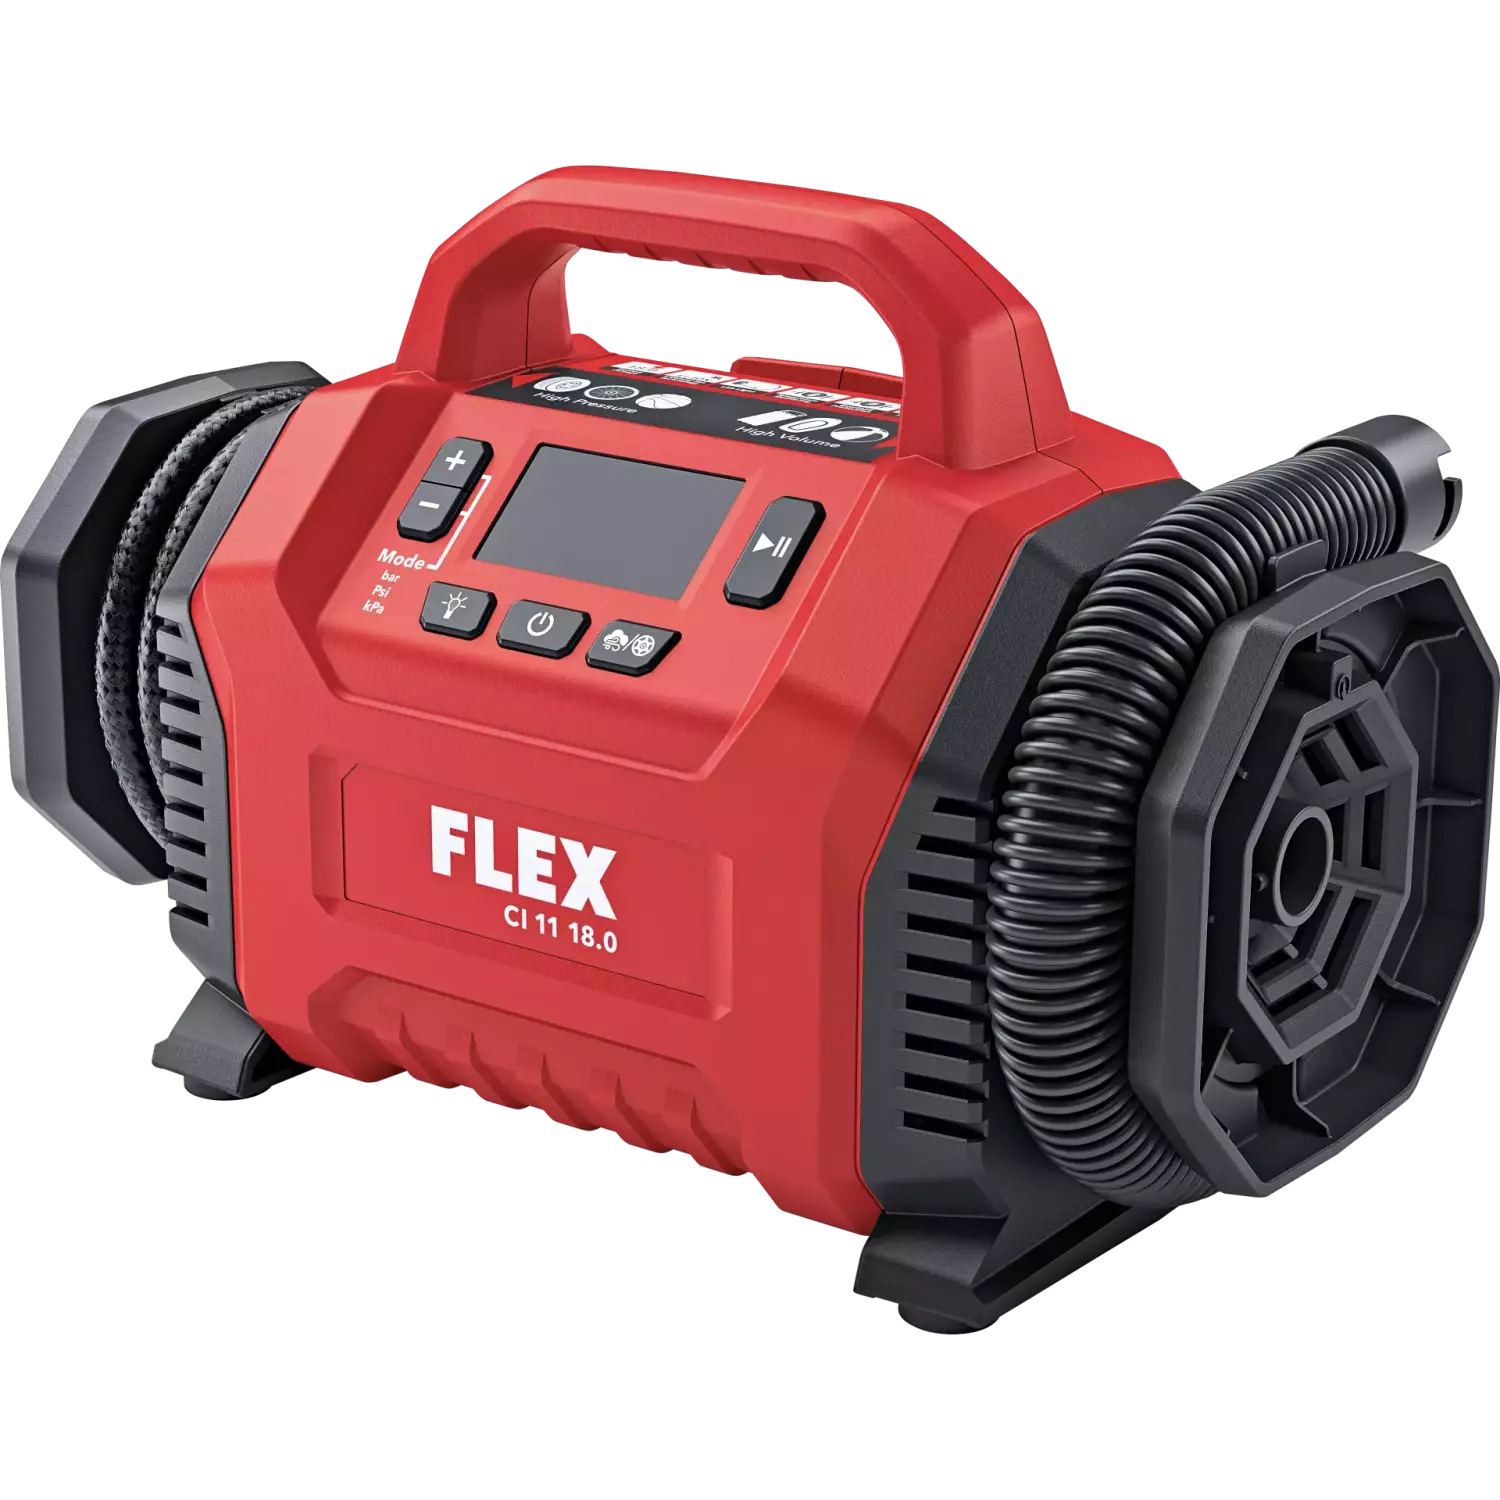 Flex 506648 Compresseur sans fil-image